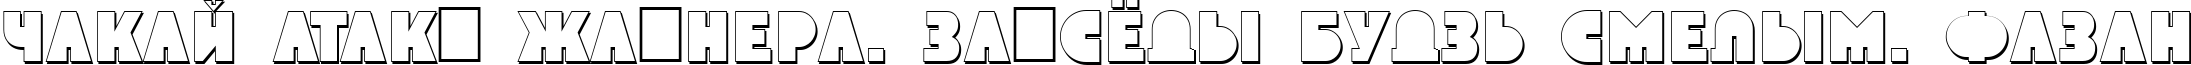 Пример написания шрифтом a_GrotoSh текста на белорусском